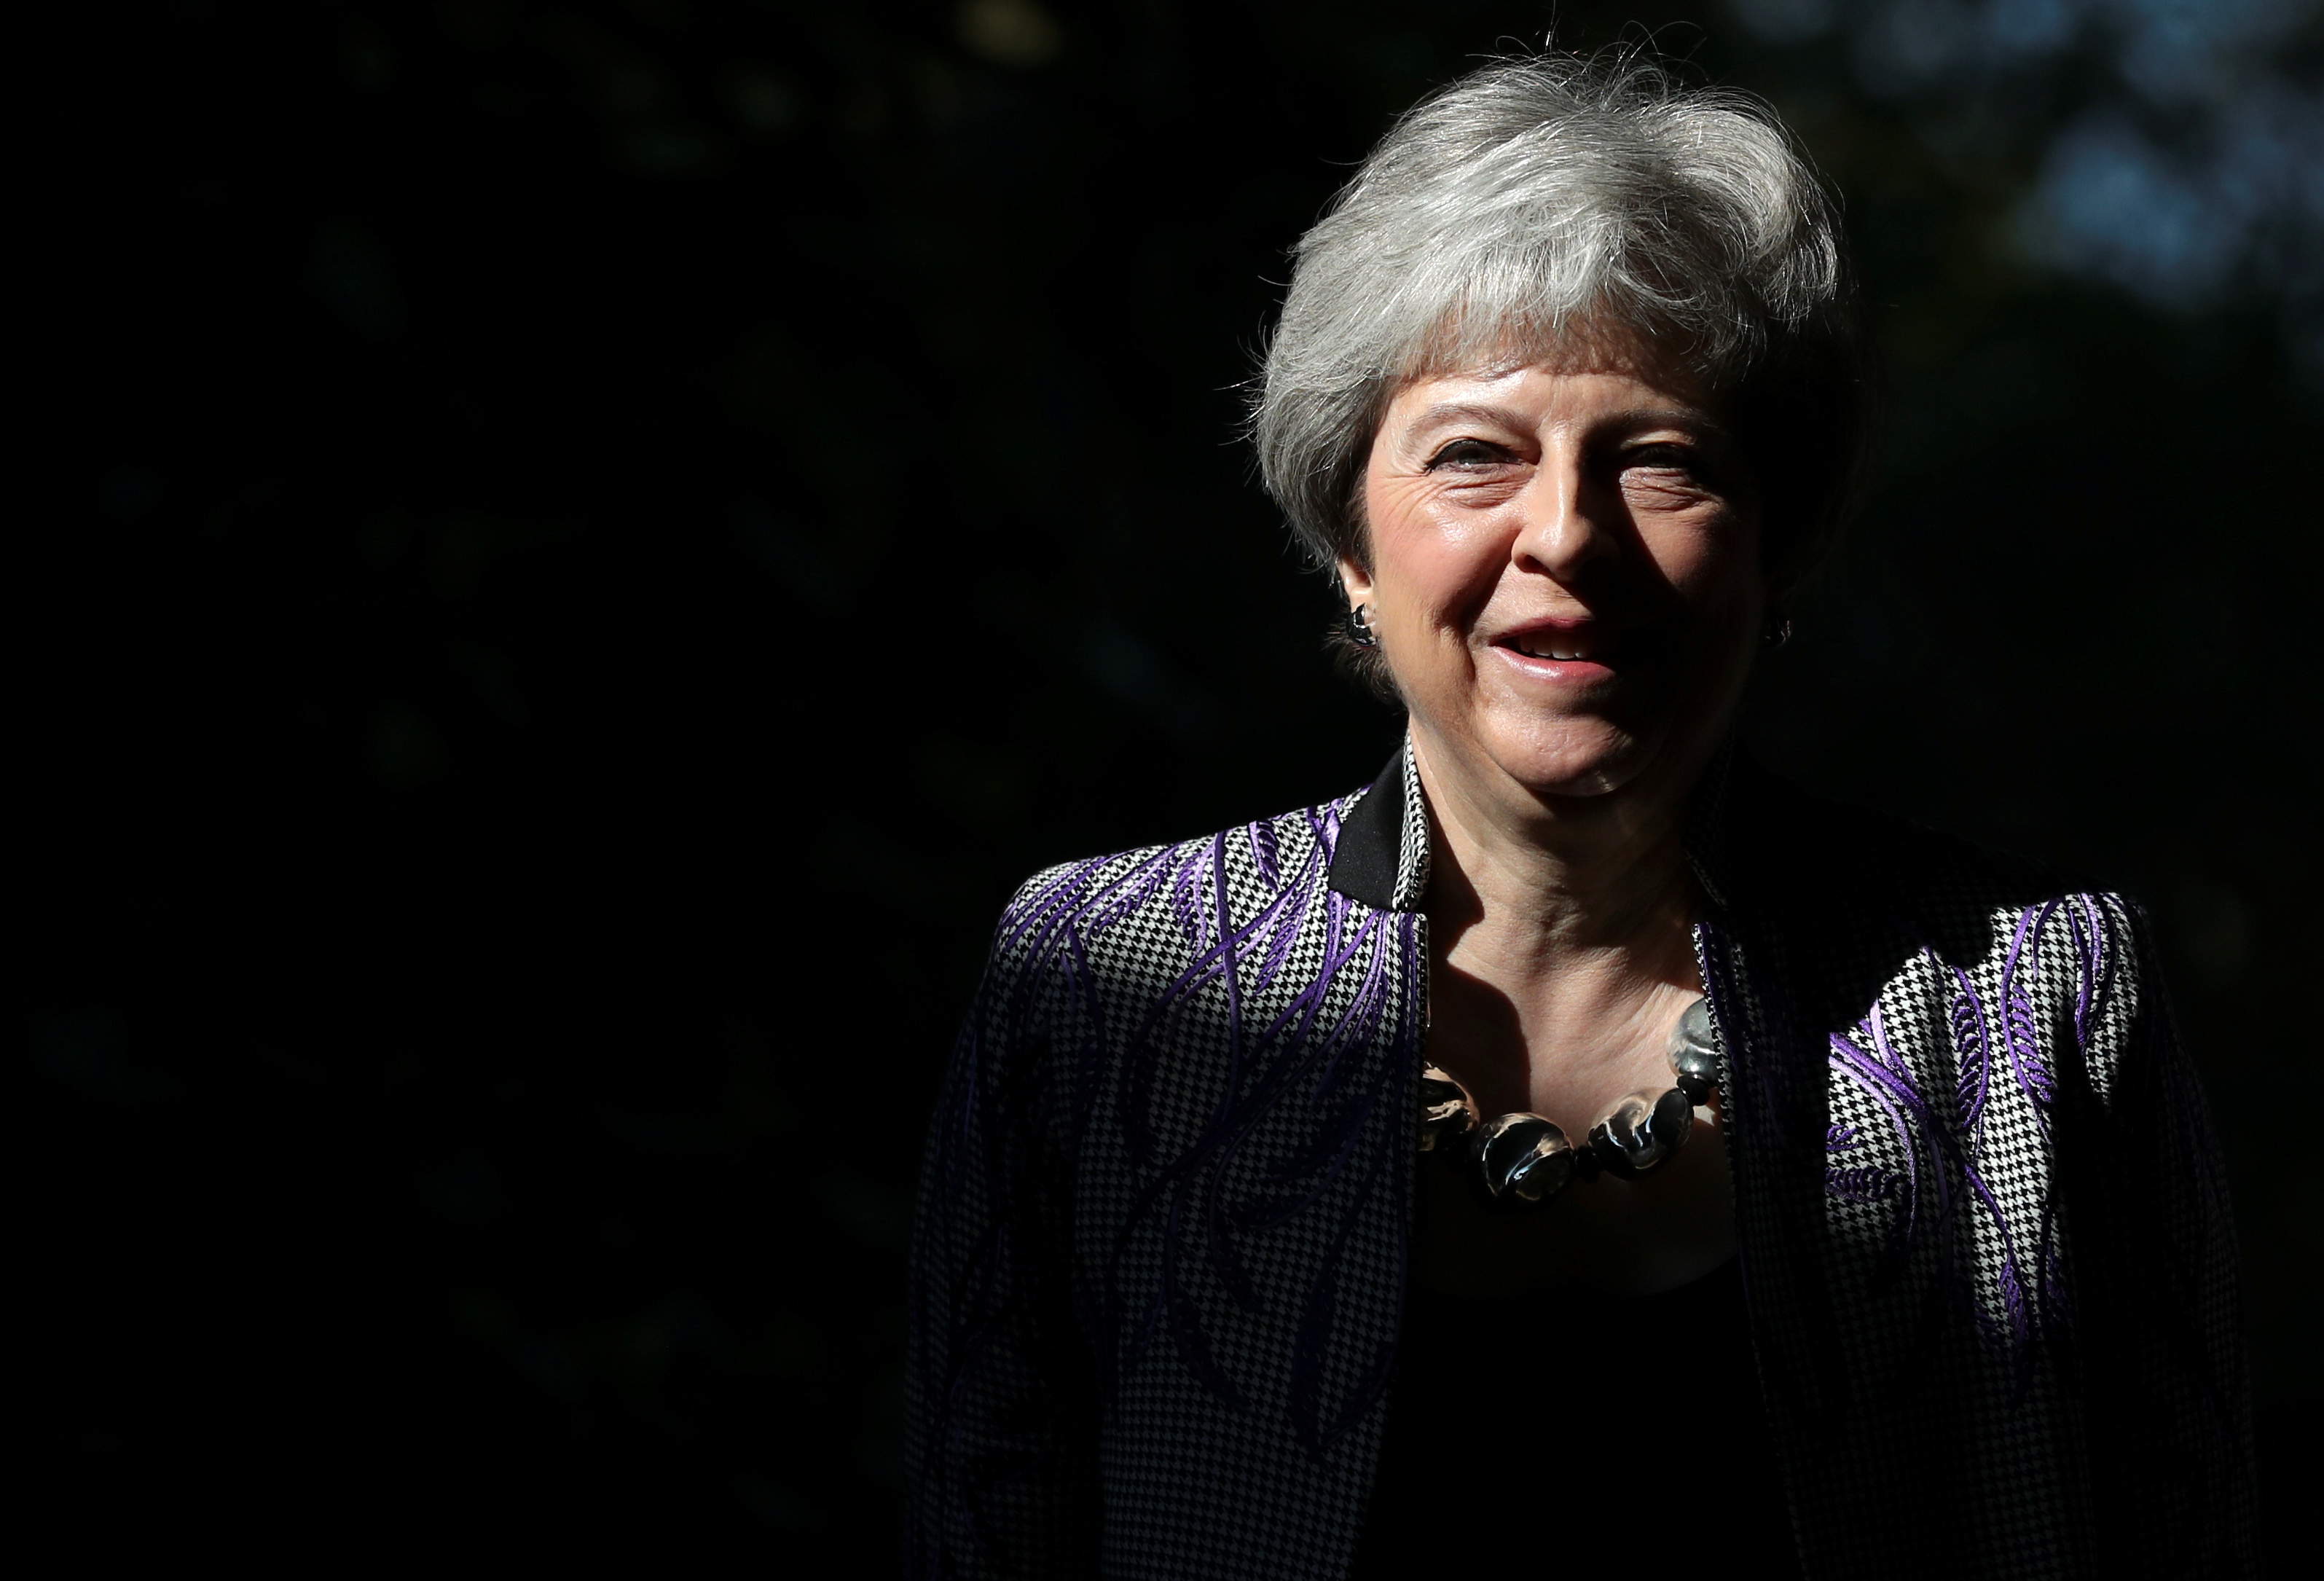 Affaire Huawei en Grande-Bretagne : le ministre de la Défense viré par Theresa May